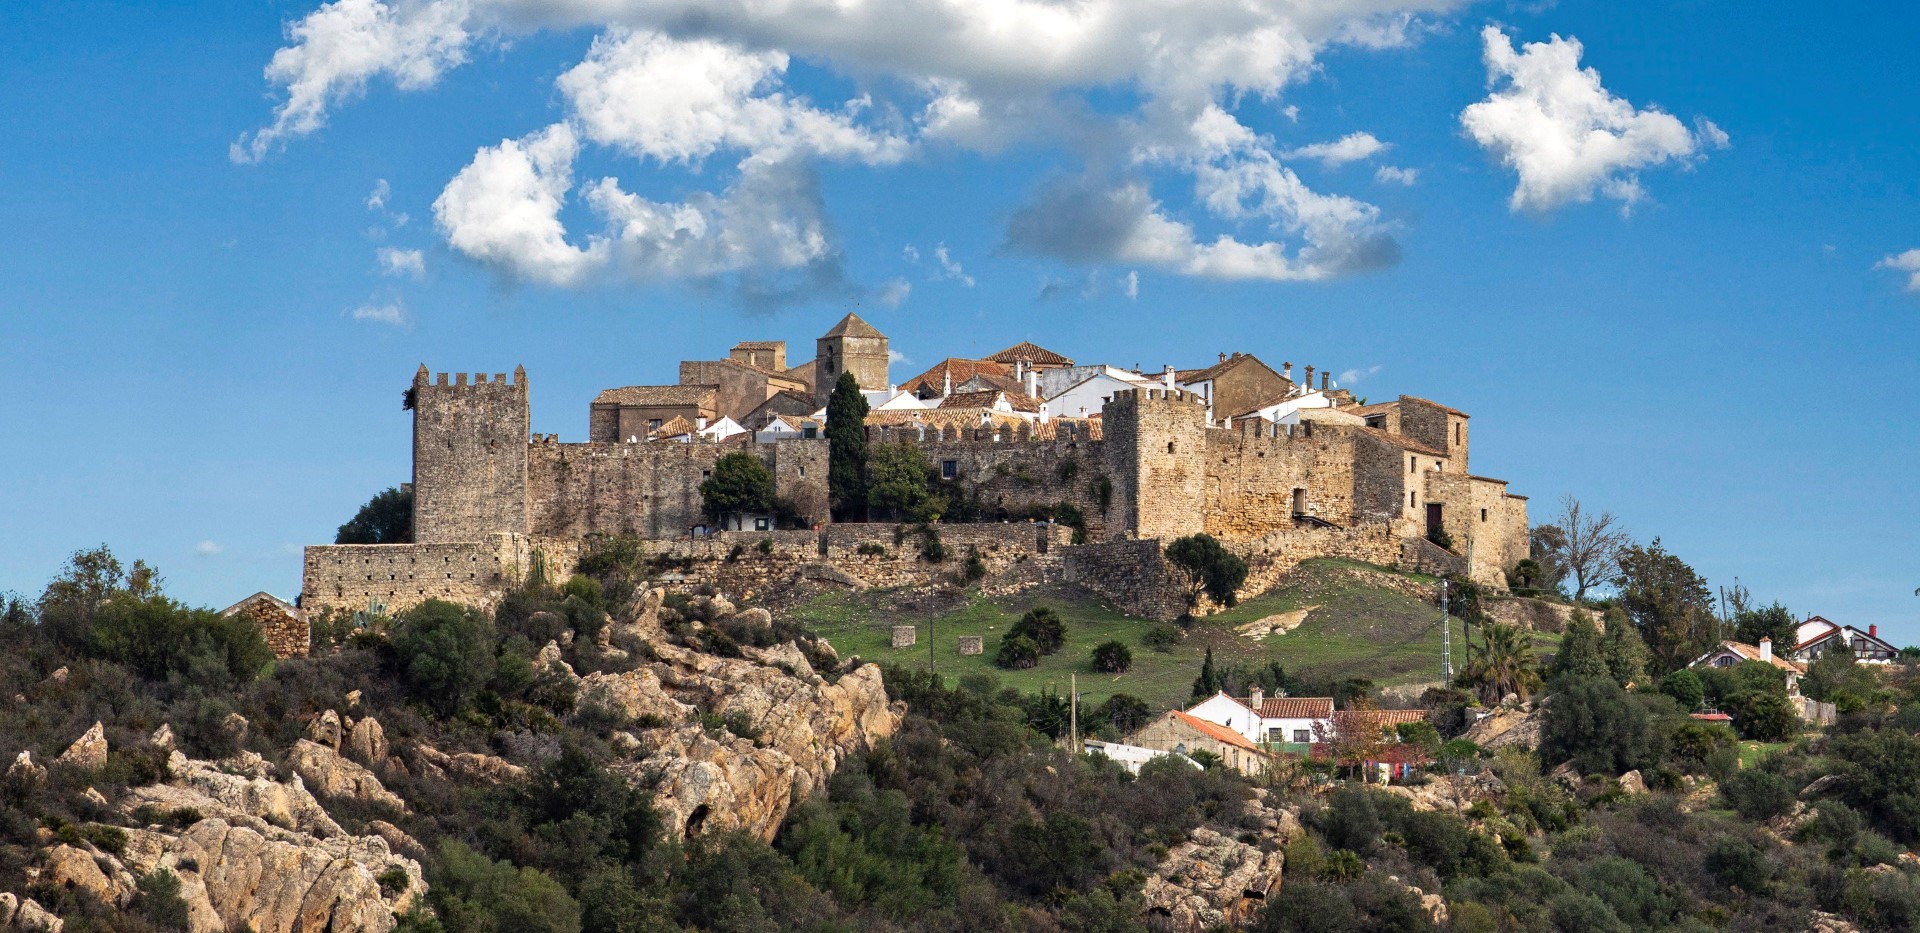 Visite o Castelo de Castellar de la Frontera